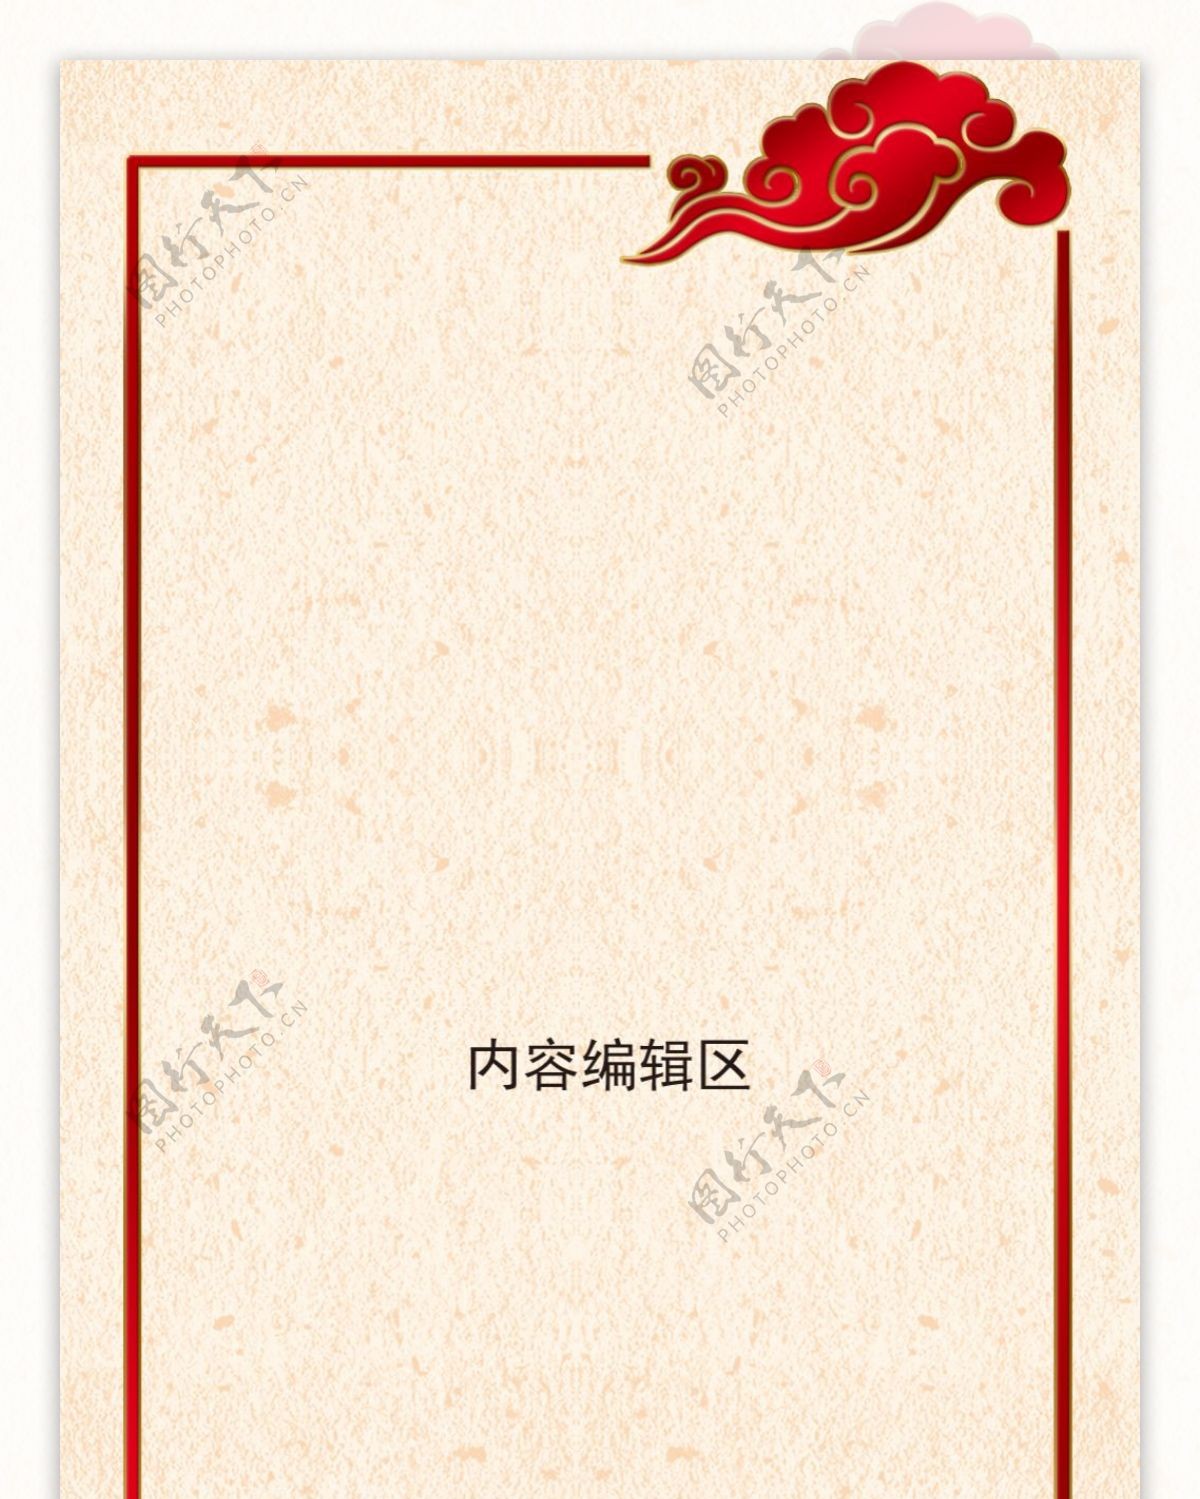 中国风水墨牡丹展架设计模板素材海报画面